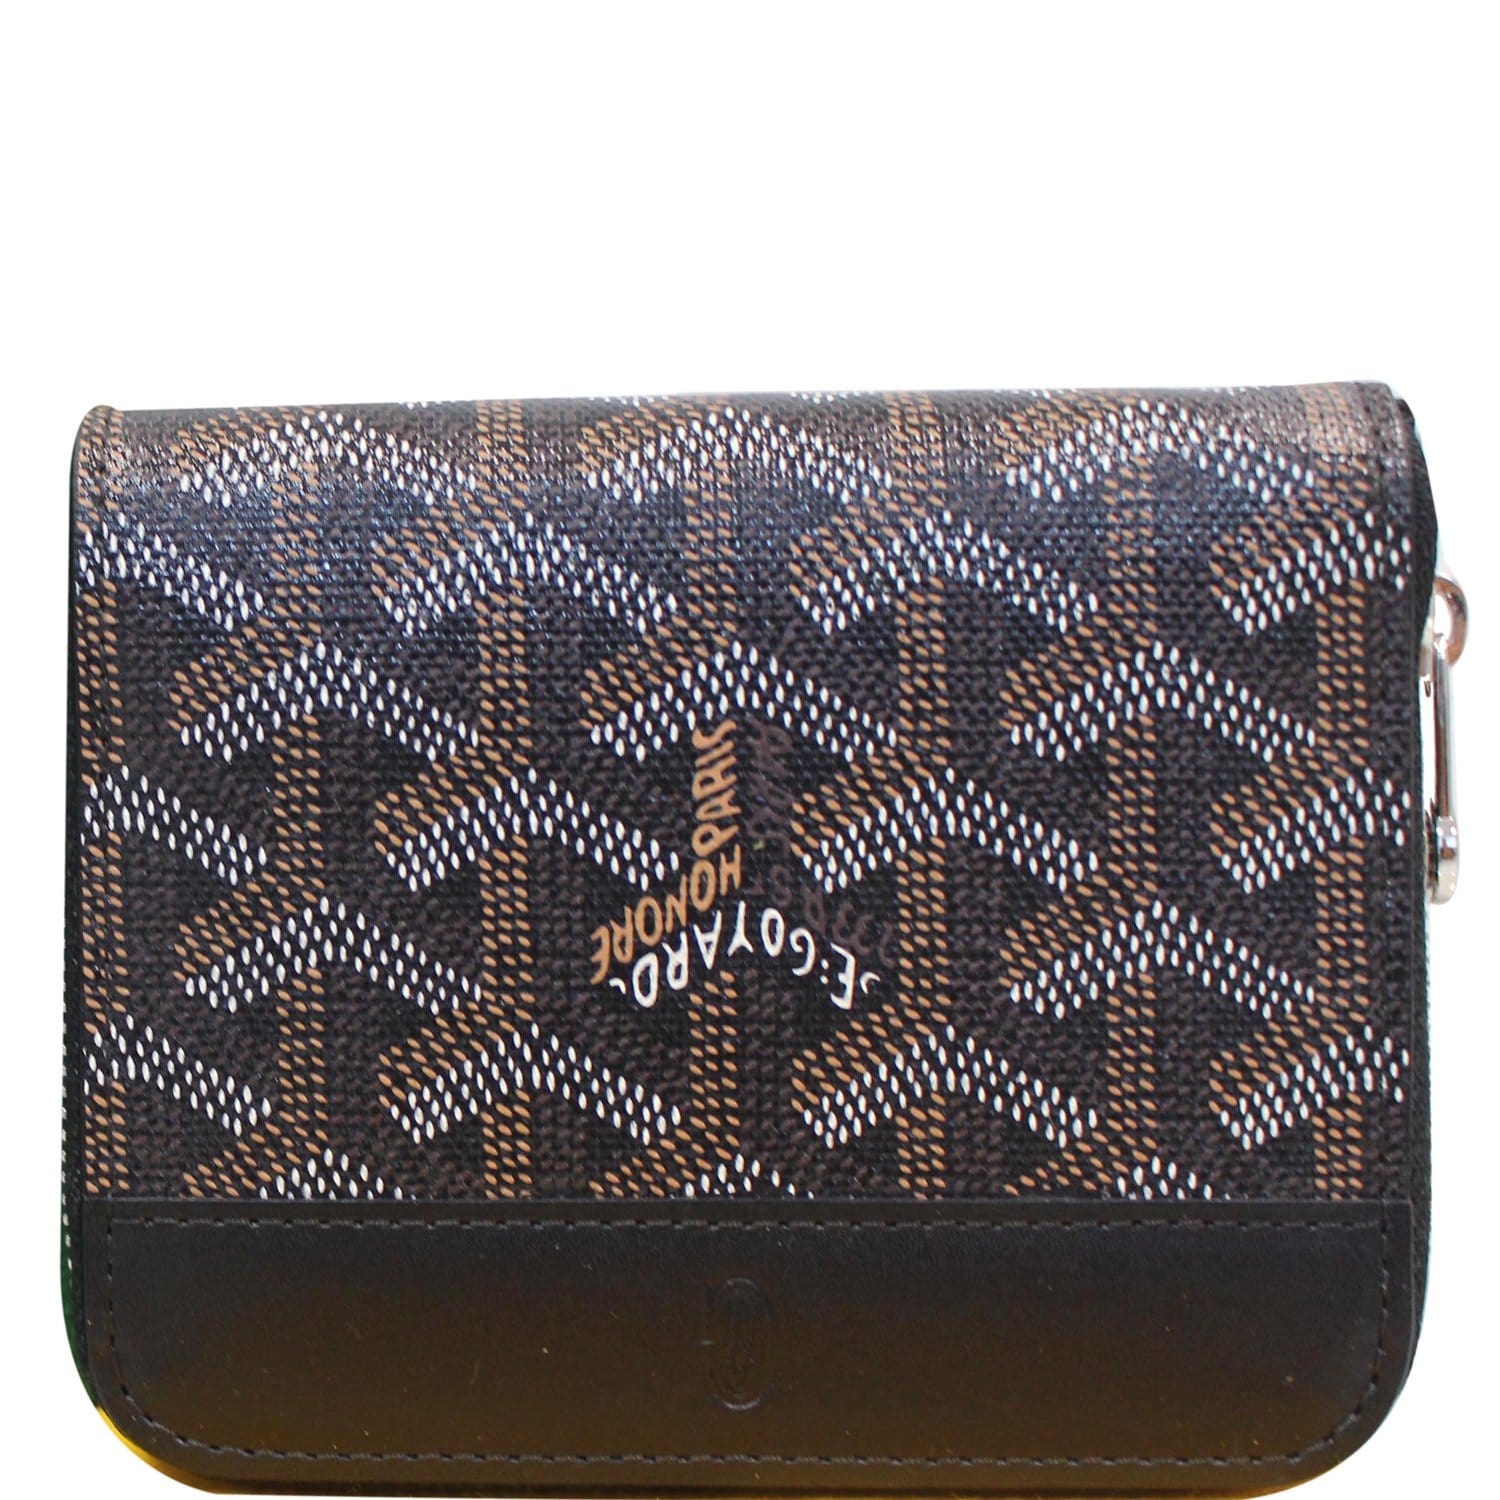 Goyard card case, Women's Fashion, Bags & Wallets, Wallets & Card